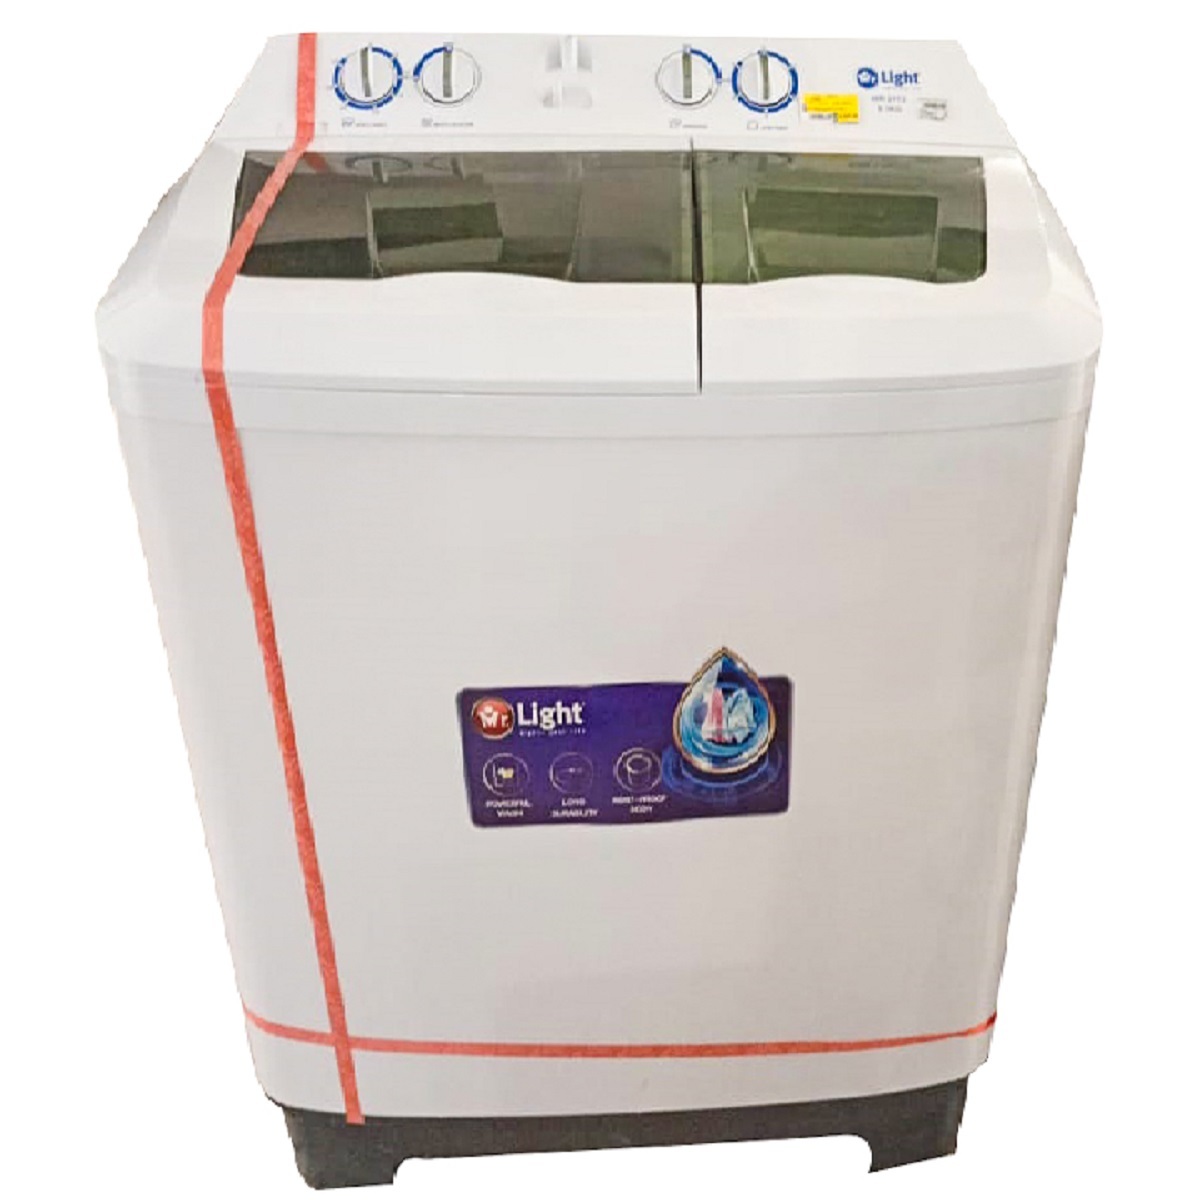 Mr light Washing Machine Semi Automatic MR 2113 9.5Kg